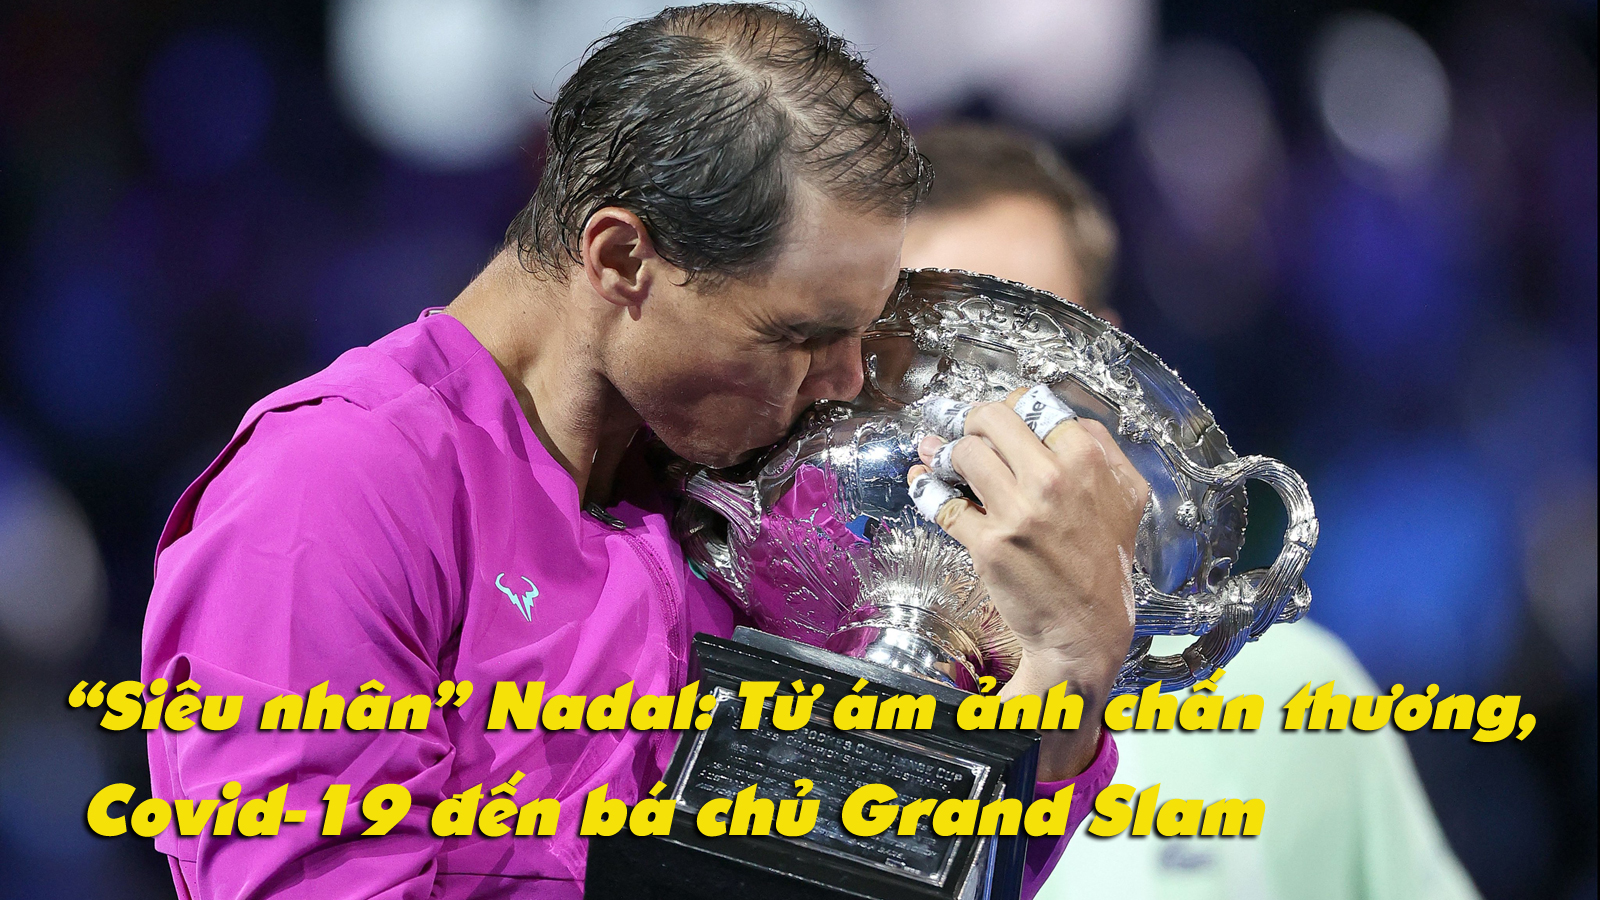 “Siêu nhân” Nadal: Từ ám ảnh chấn thương, Covid-19 đến bá chủ 21 Grand Slam - 1